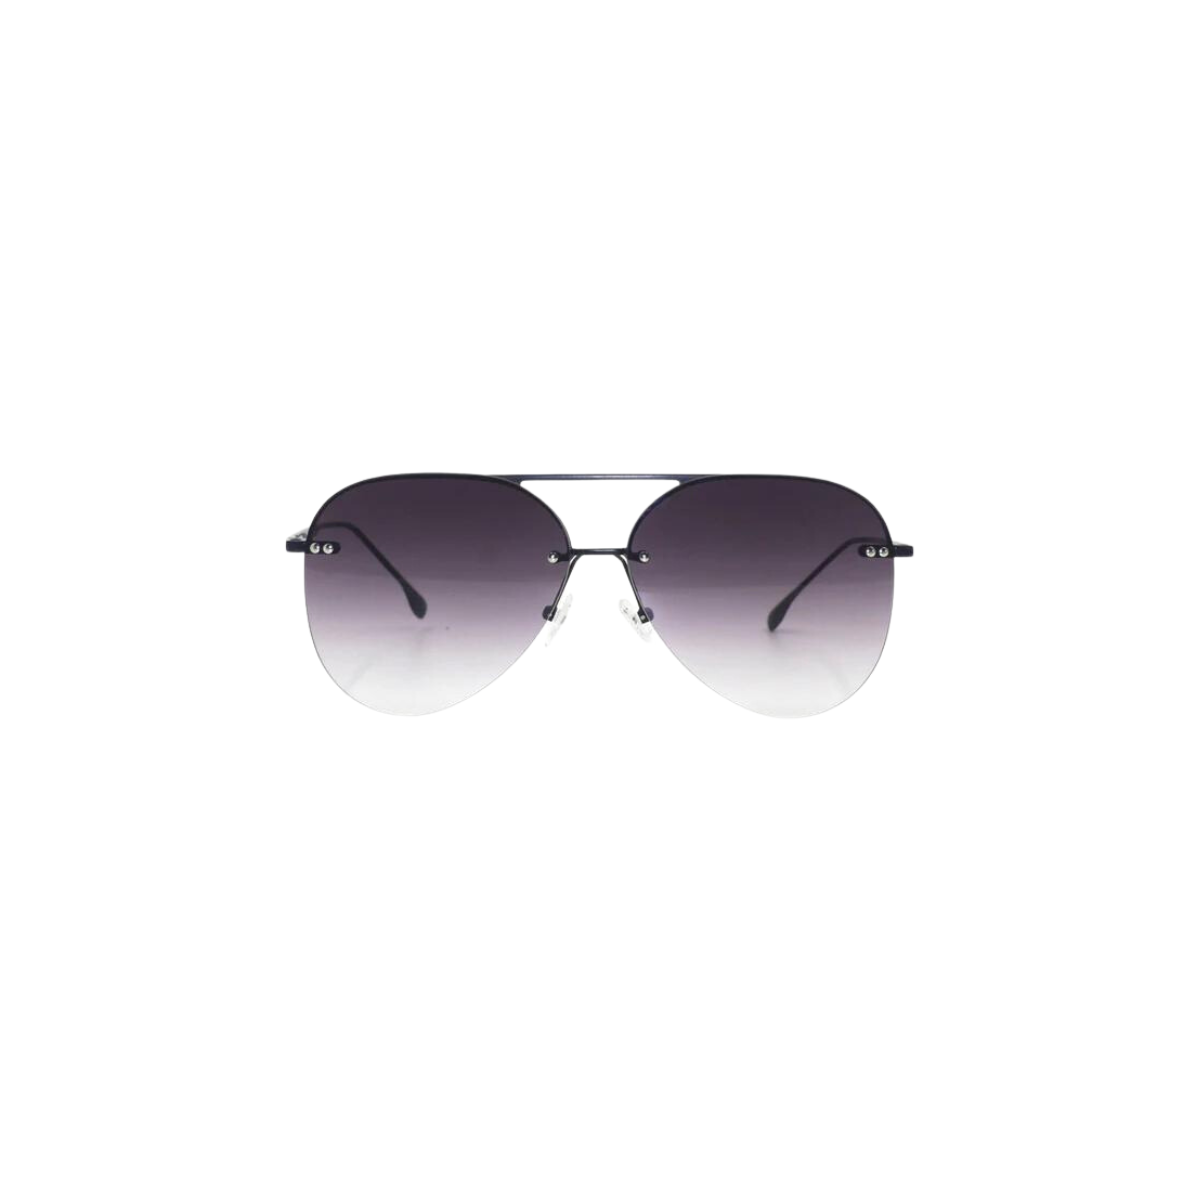 Topfoxx Megan 2 Sunglasses in Faded Black